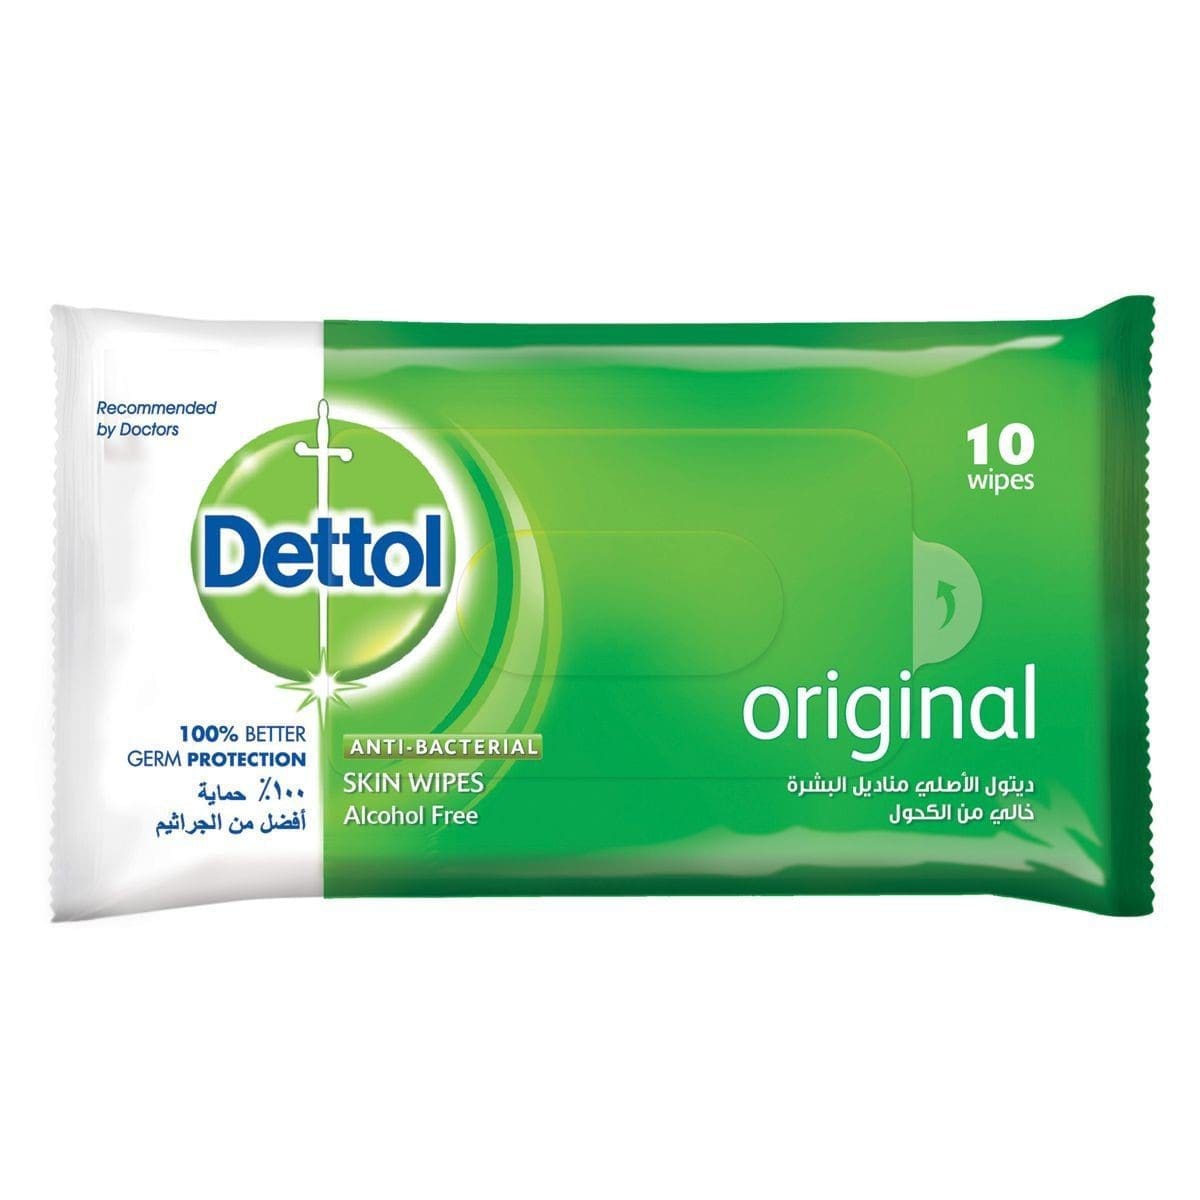 Dettol Anti-Bacterial Wipes Original 10s